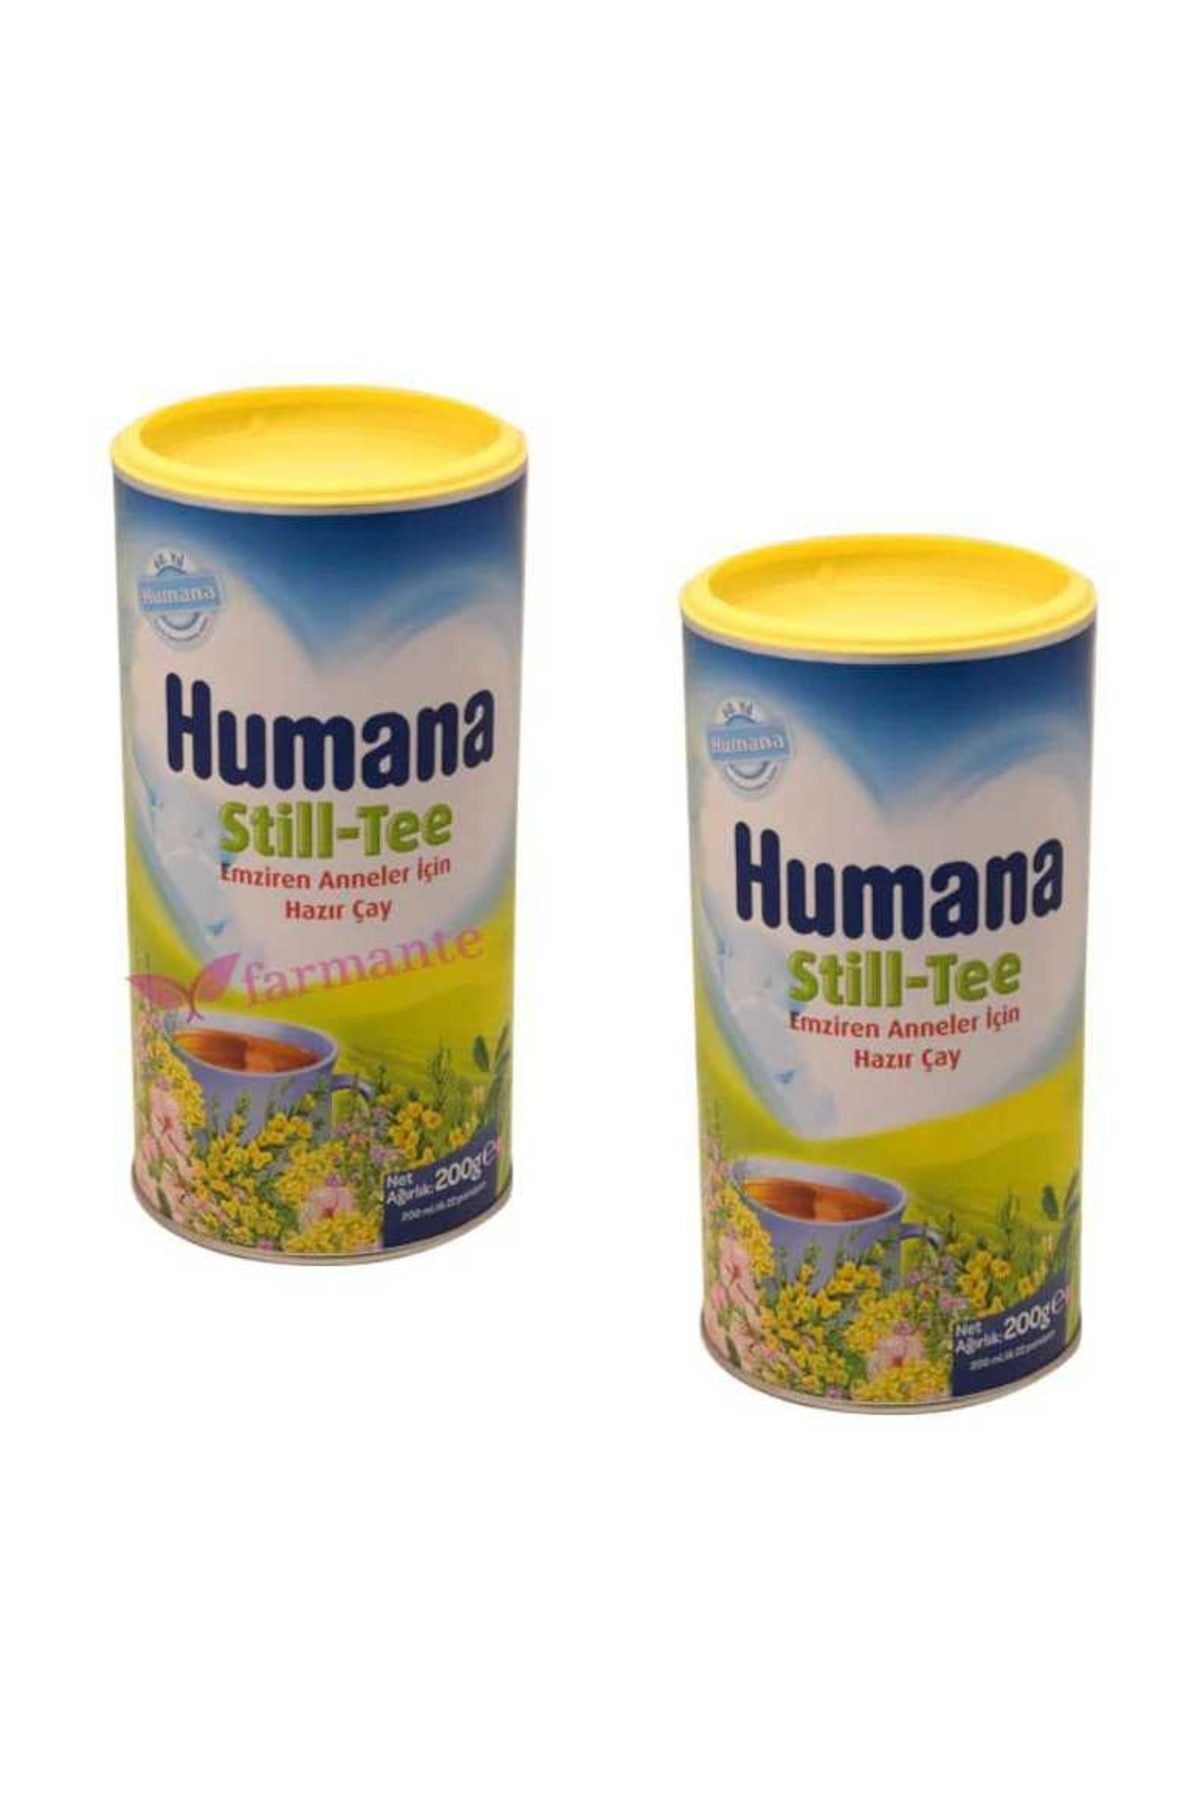 Humana Still Tee Emziren Anneler için Hazır Çay 2'li Avantaj Paketi 200 gr